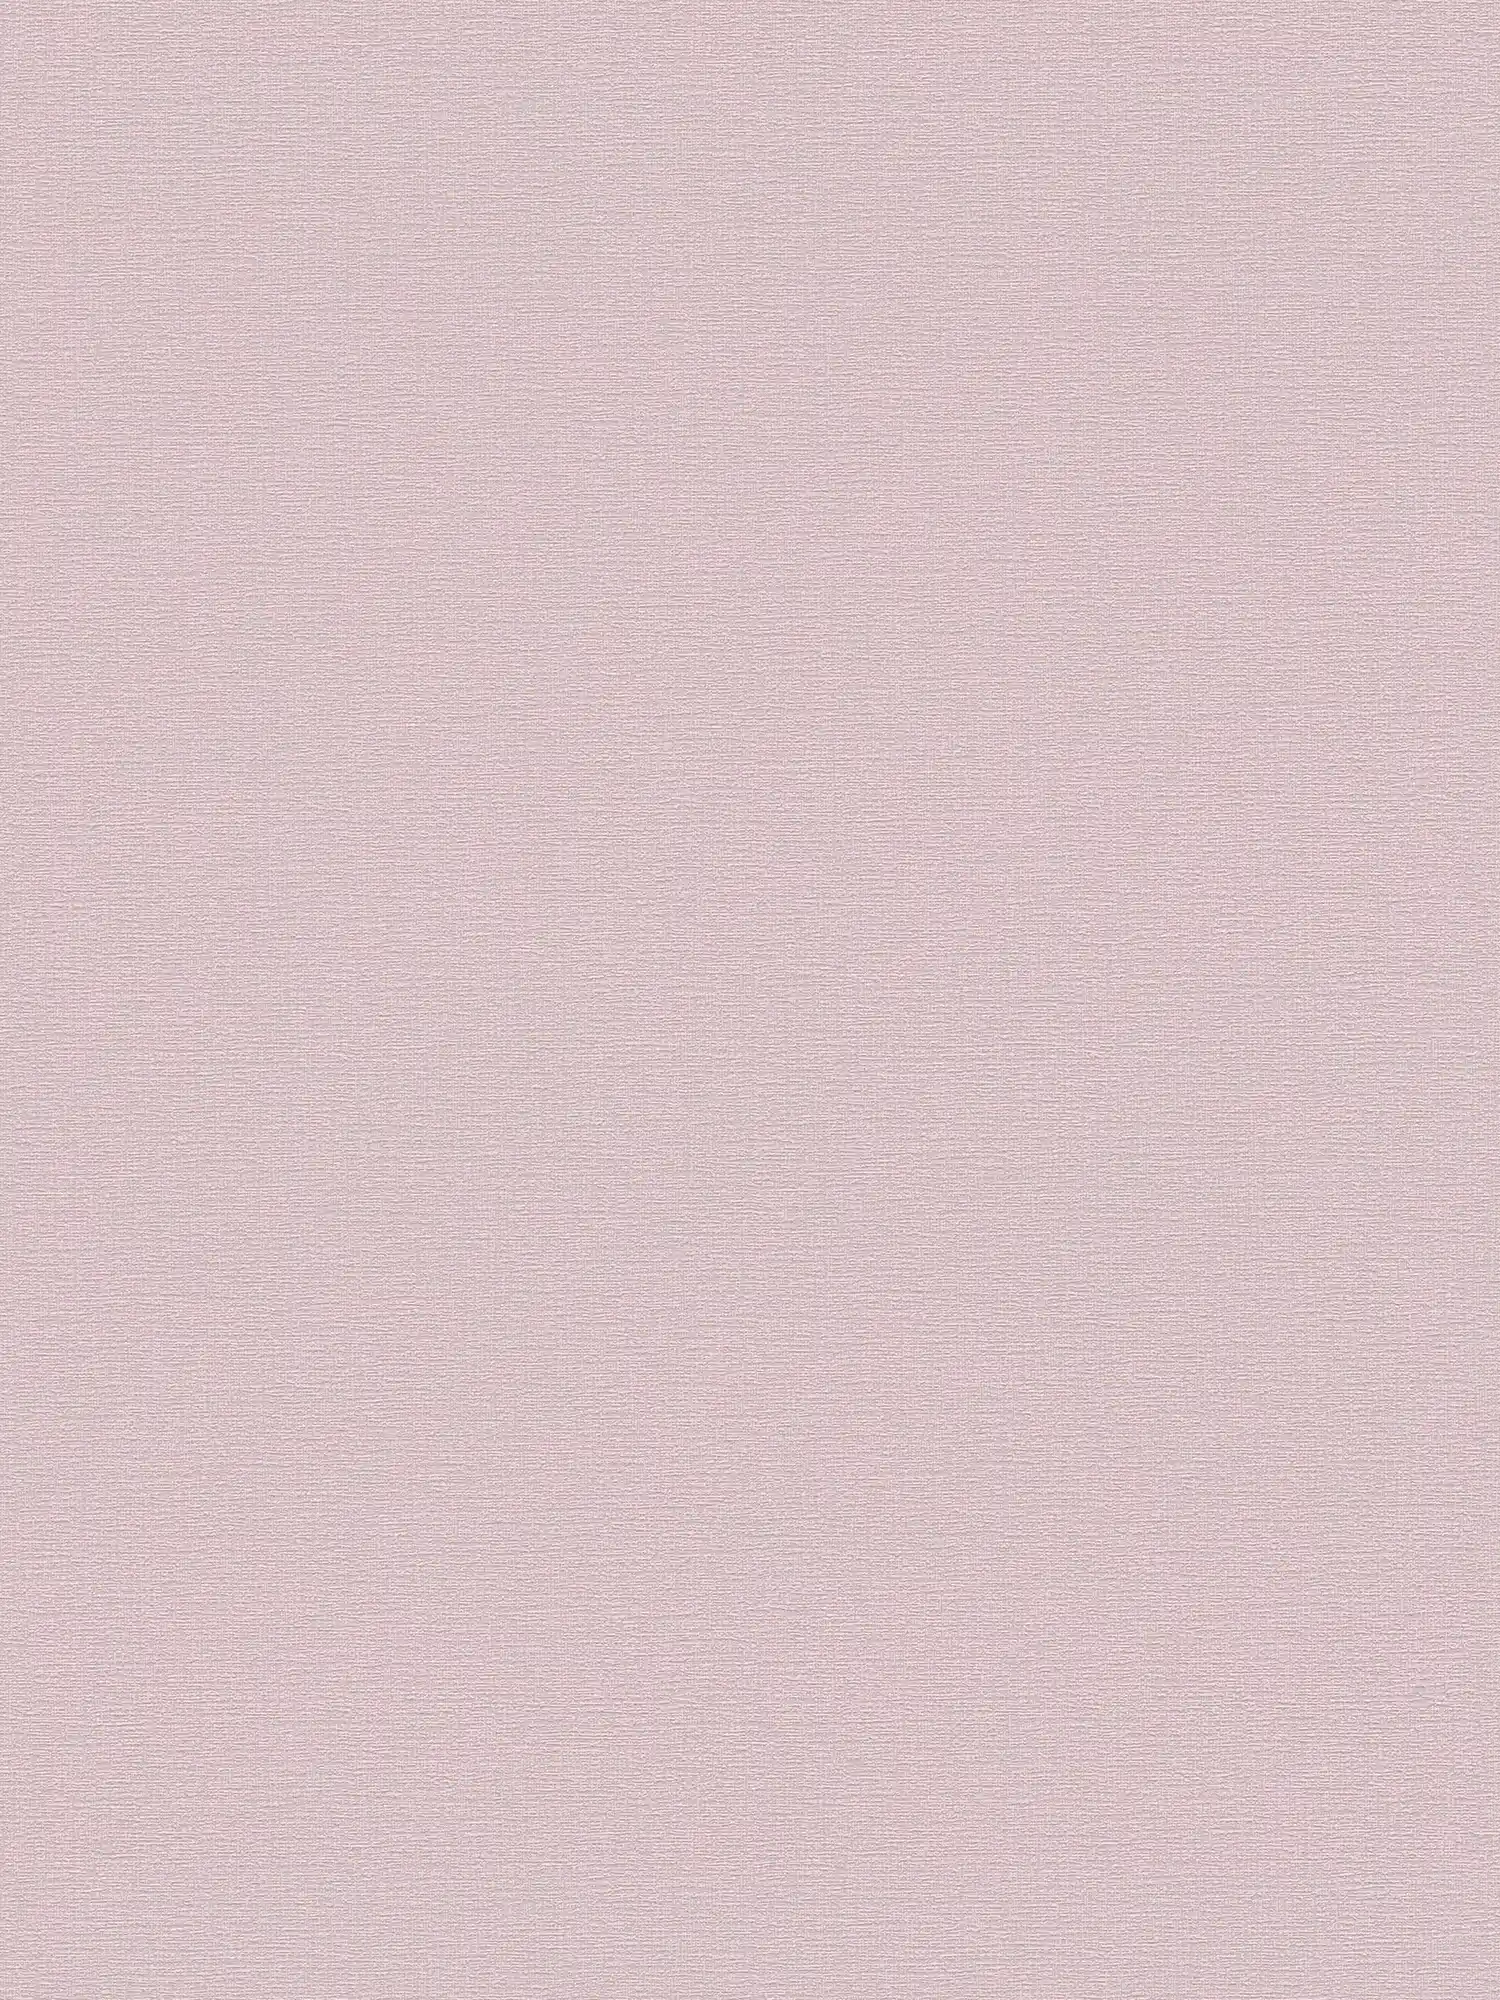 Papel pintado unitario con textura ligera - rosa, rosa oscuro
